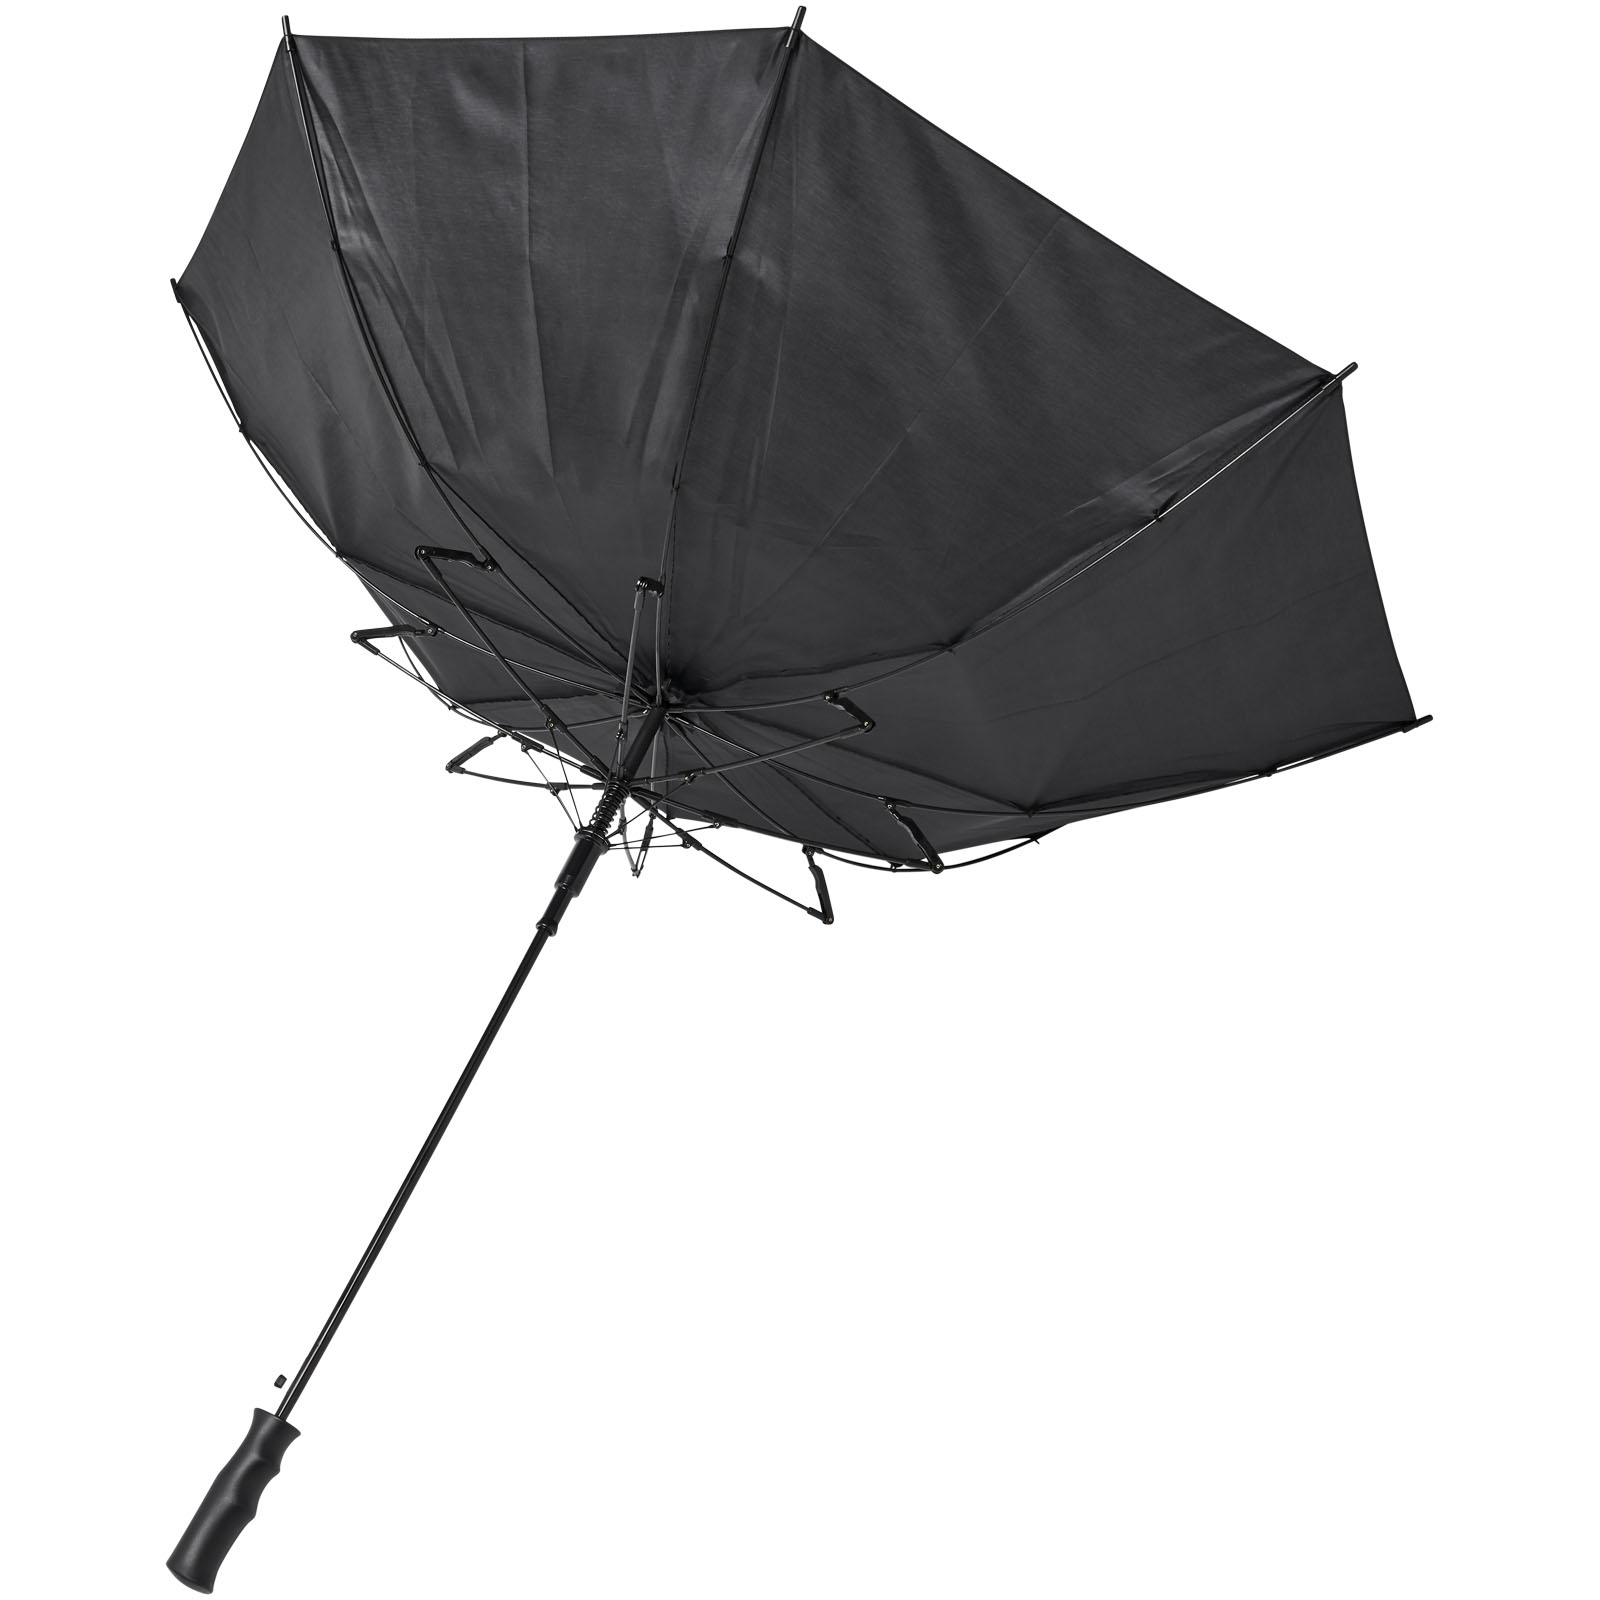 Parapluies tempête publicitaires - Parapluie tempête à ouverture automatique 23